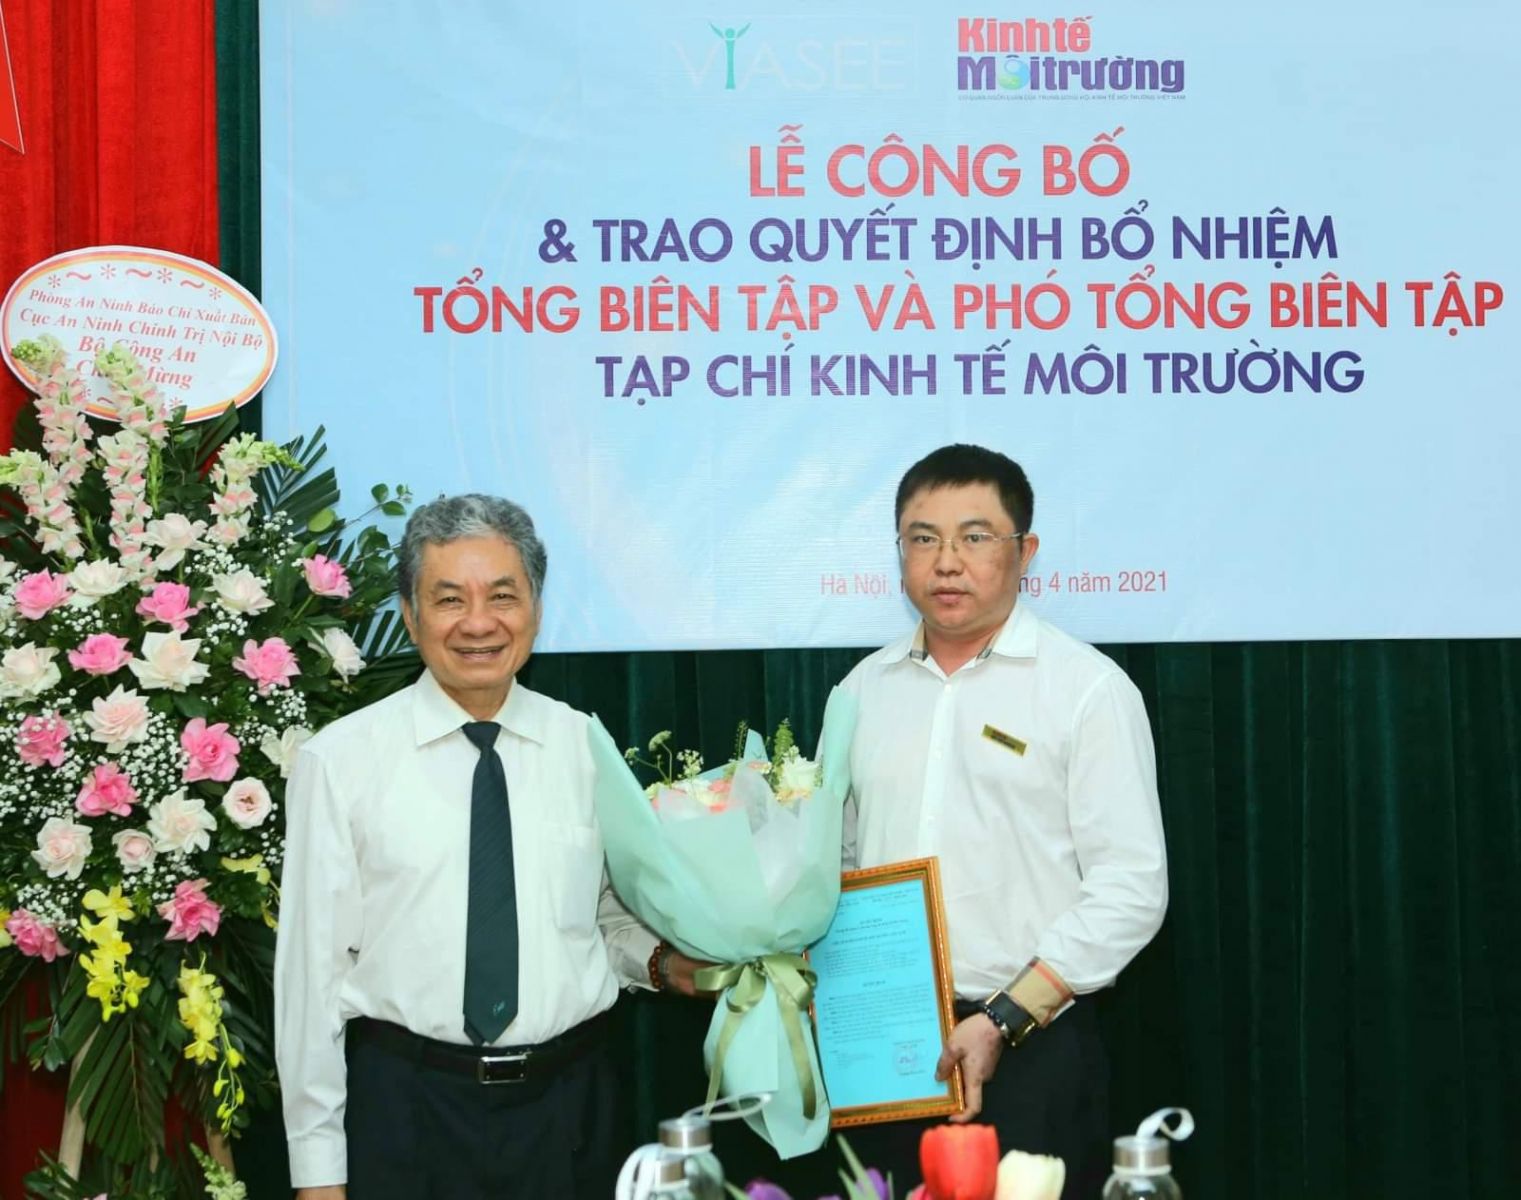 Chủ tịch TW Hội Kinh tế Môi trường Việt Nam trao quyết định bổ nhiệm Phó Tổng Biên tập đối với nhà báo Nguyễn Tường Quân.